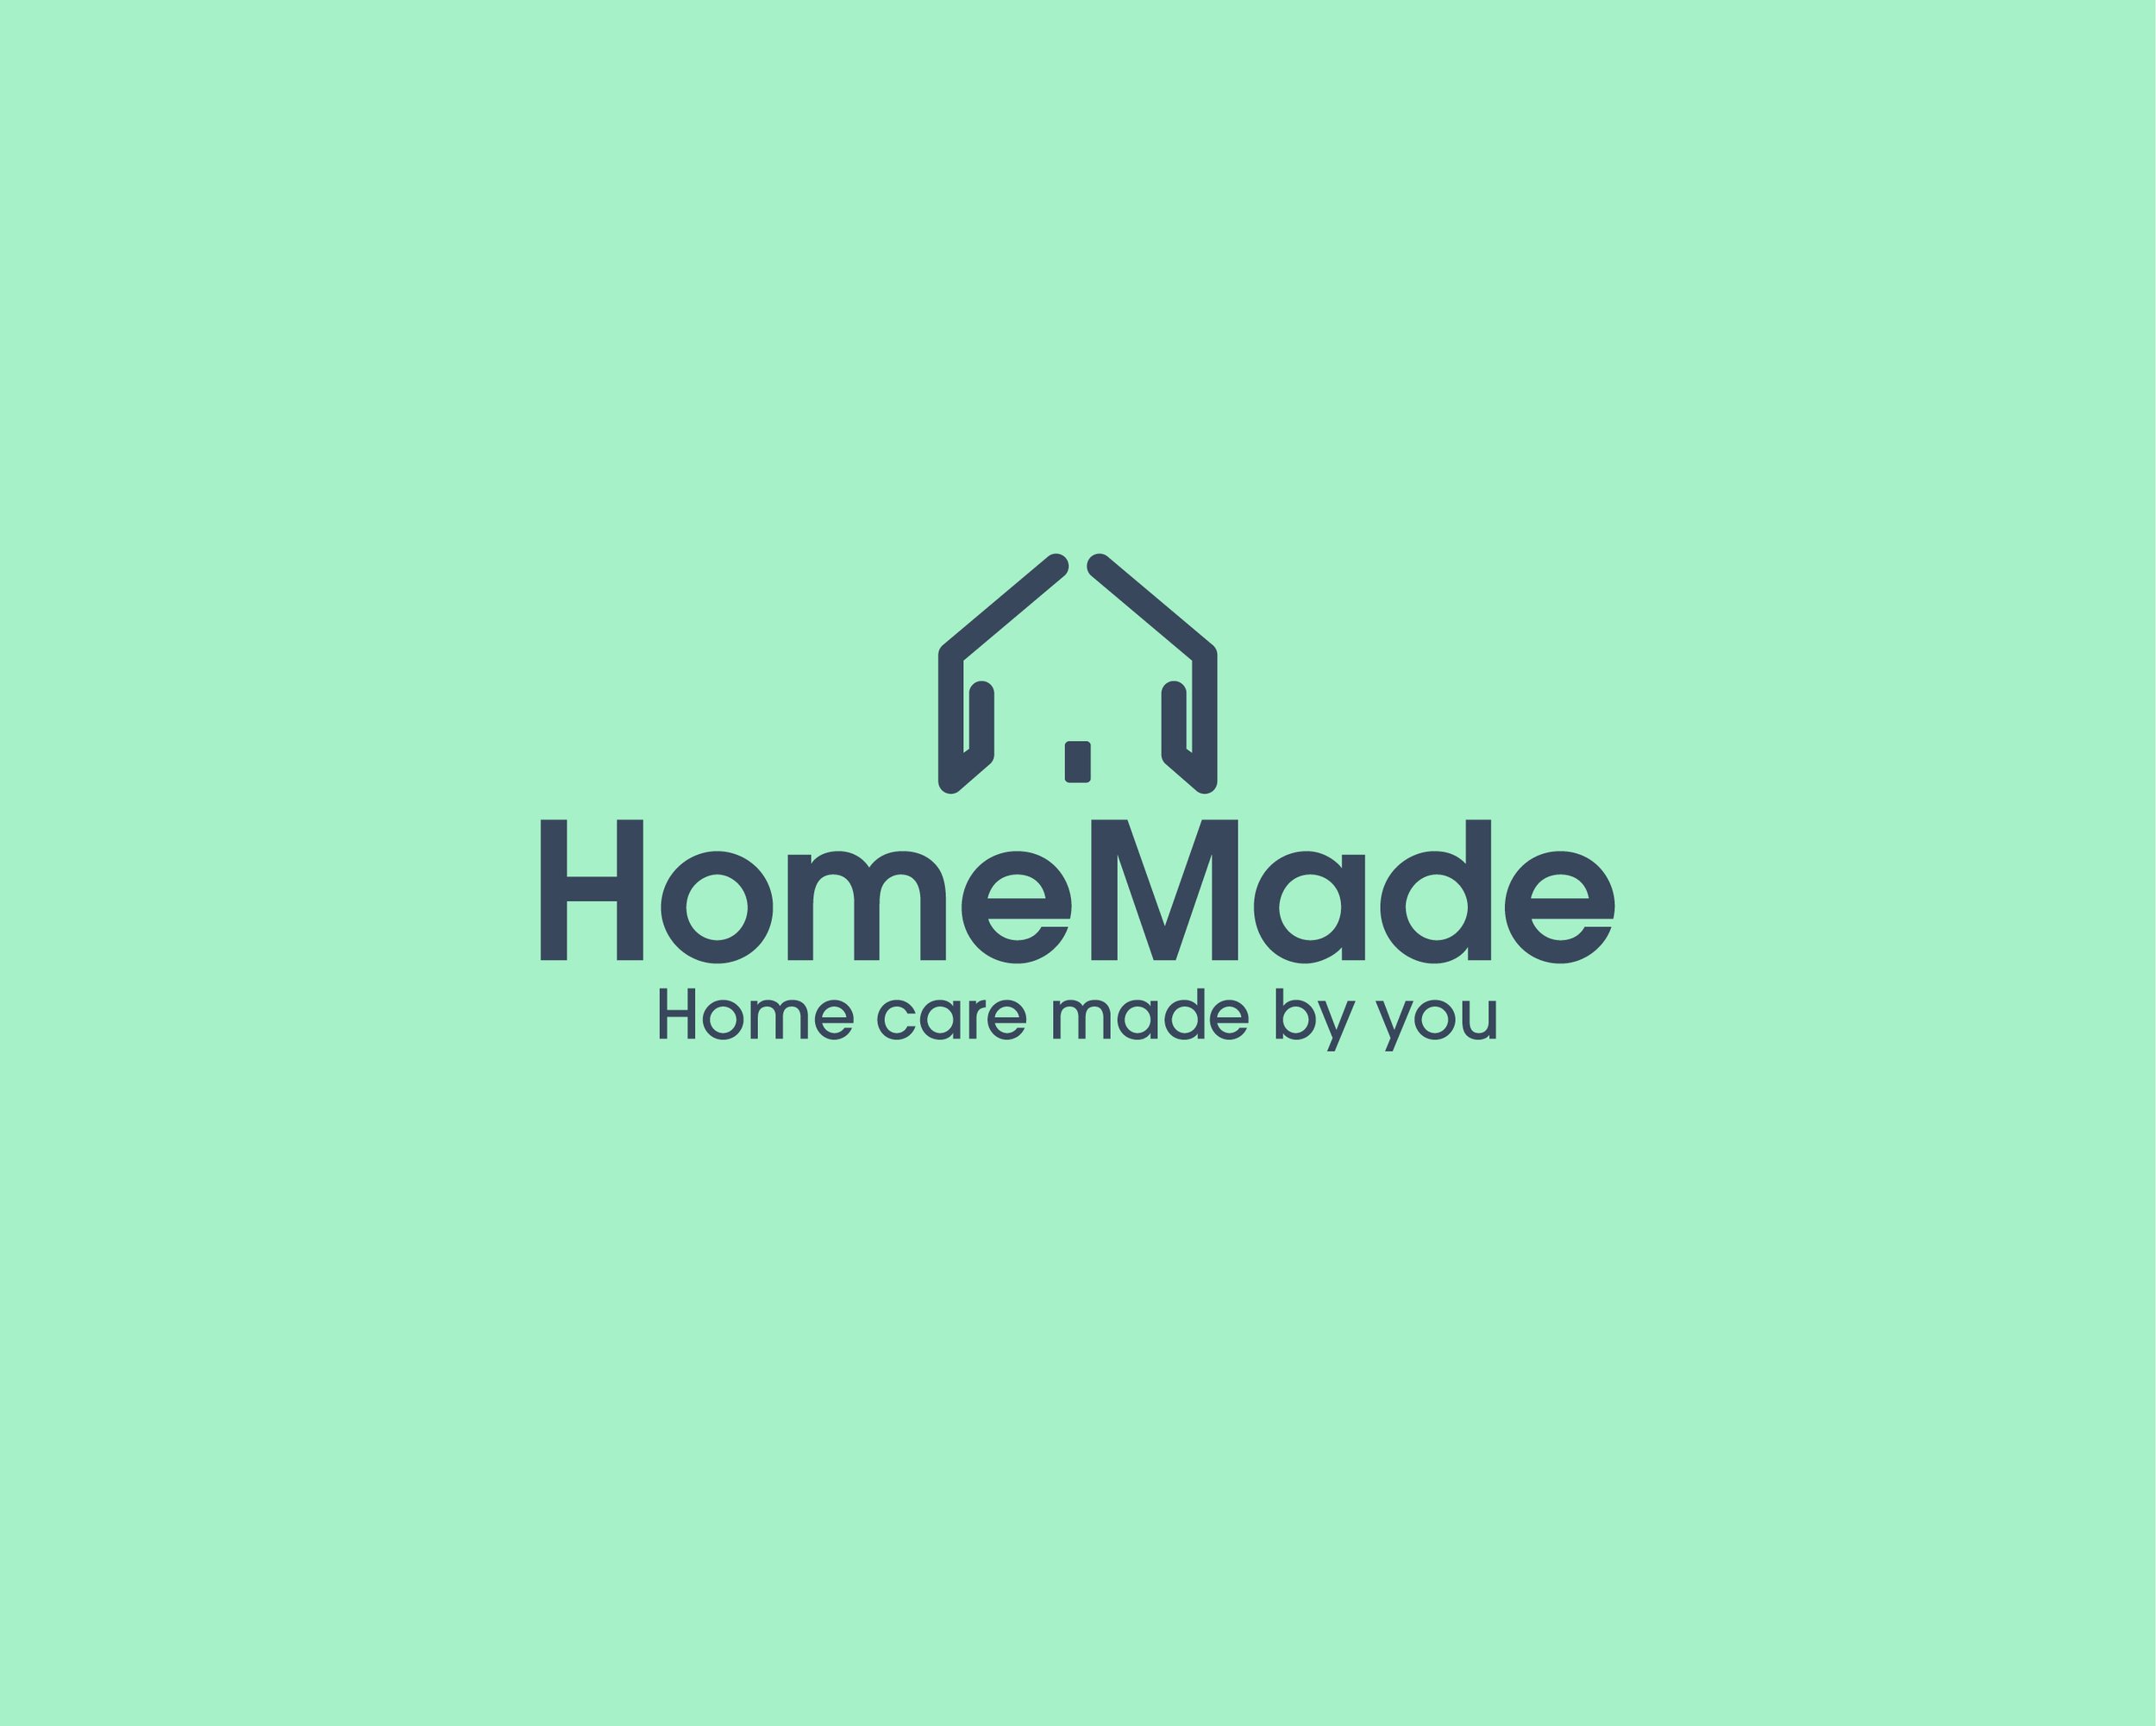 HomeMade Assets New2.jpg